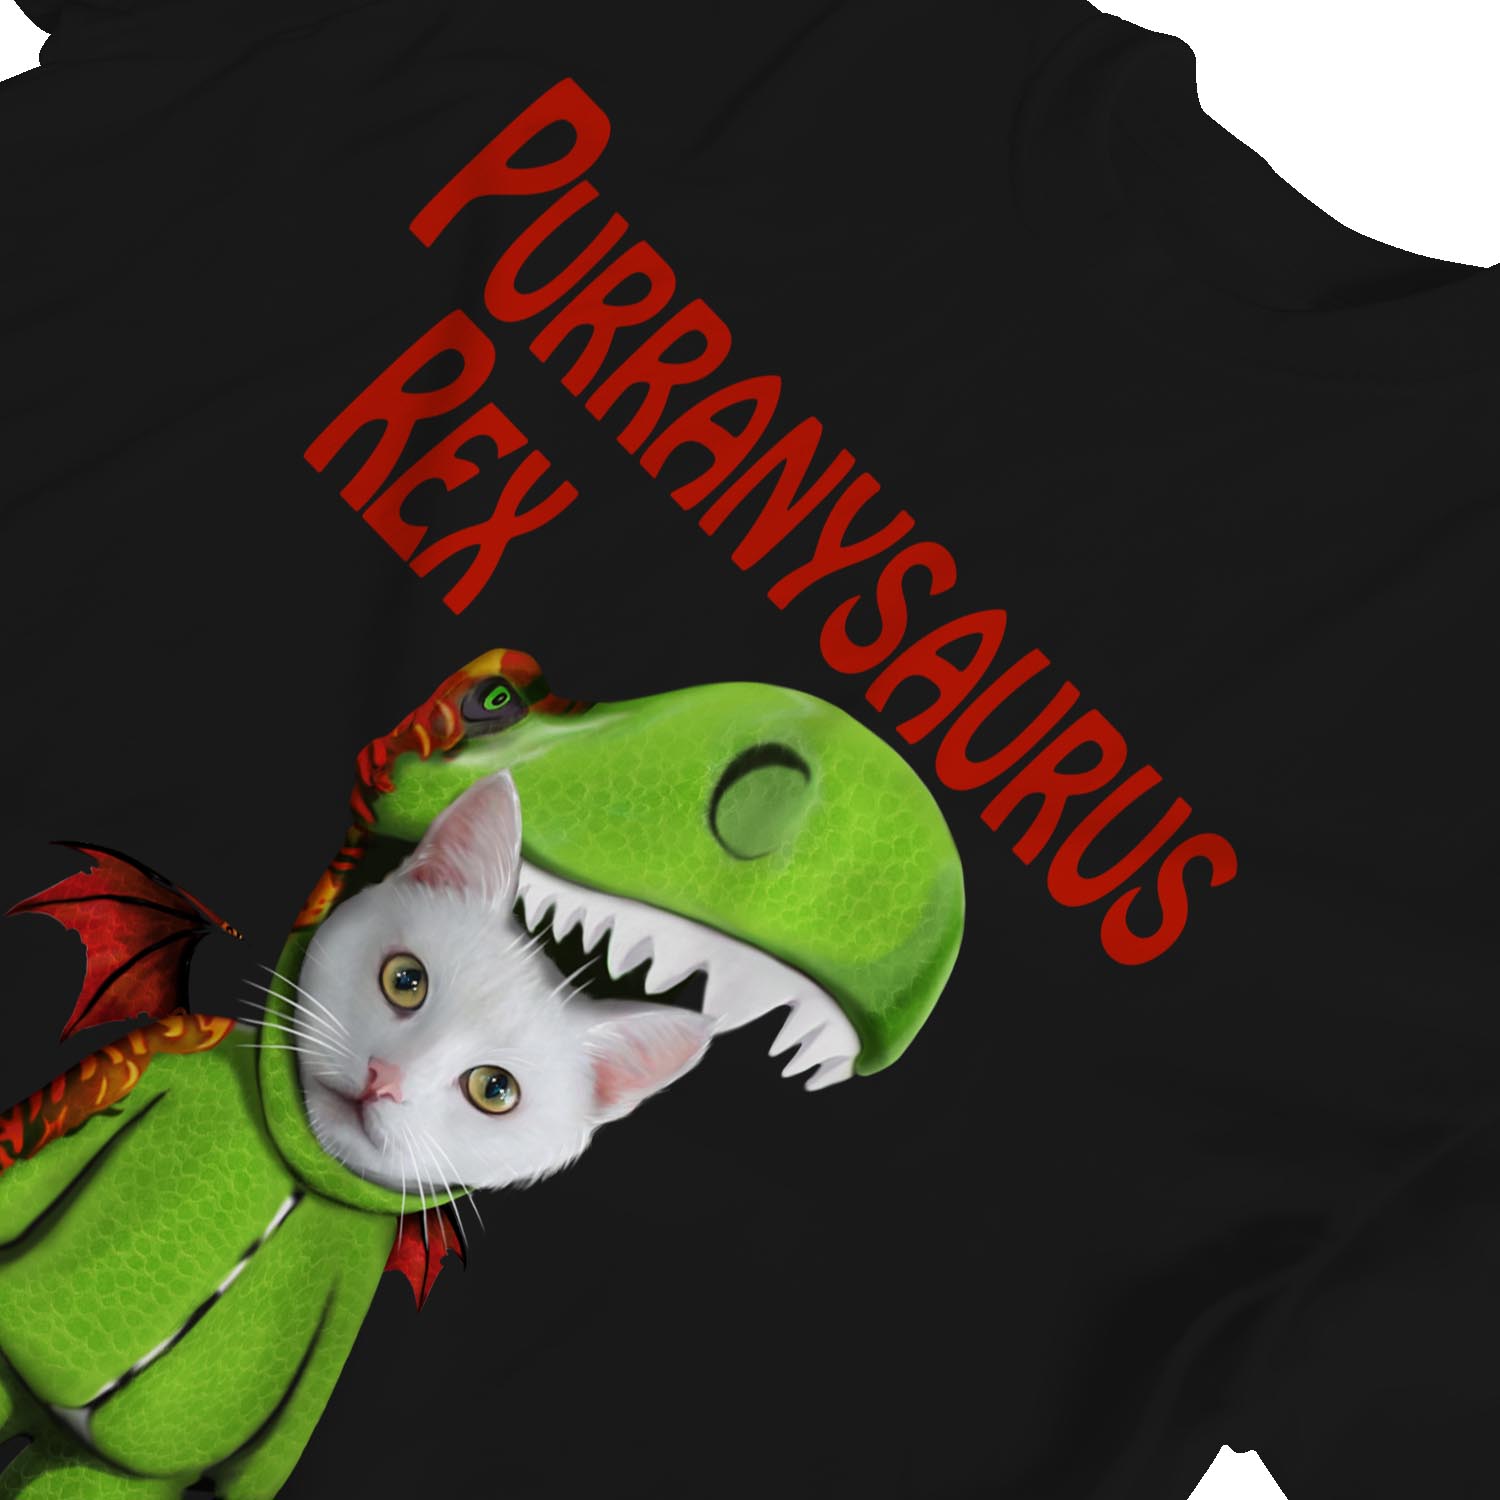 1Tee Kids Girls Purranysaurus Rex Cat T Rex Dinosaur T-Shirt